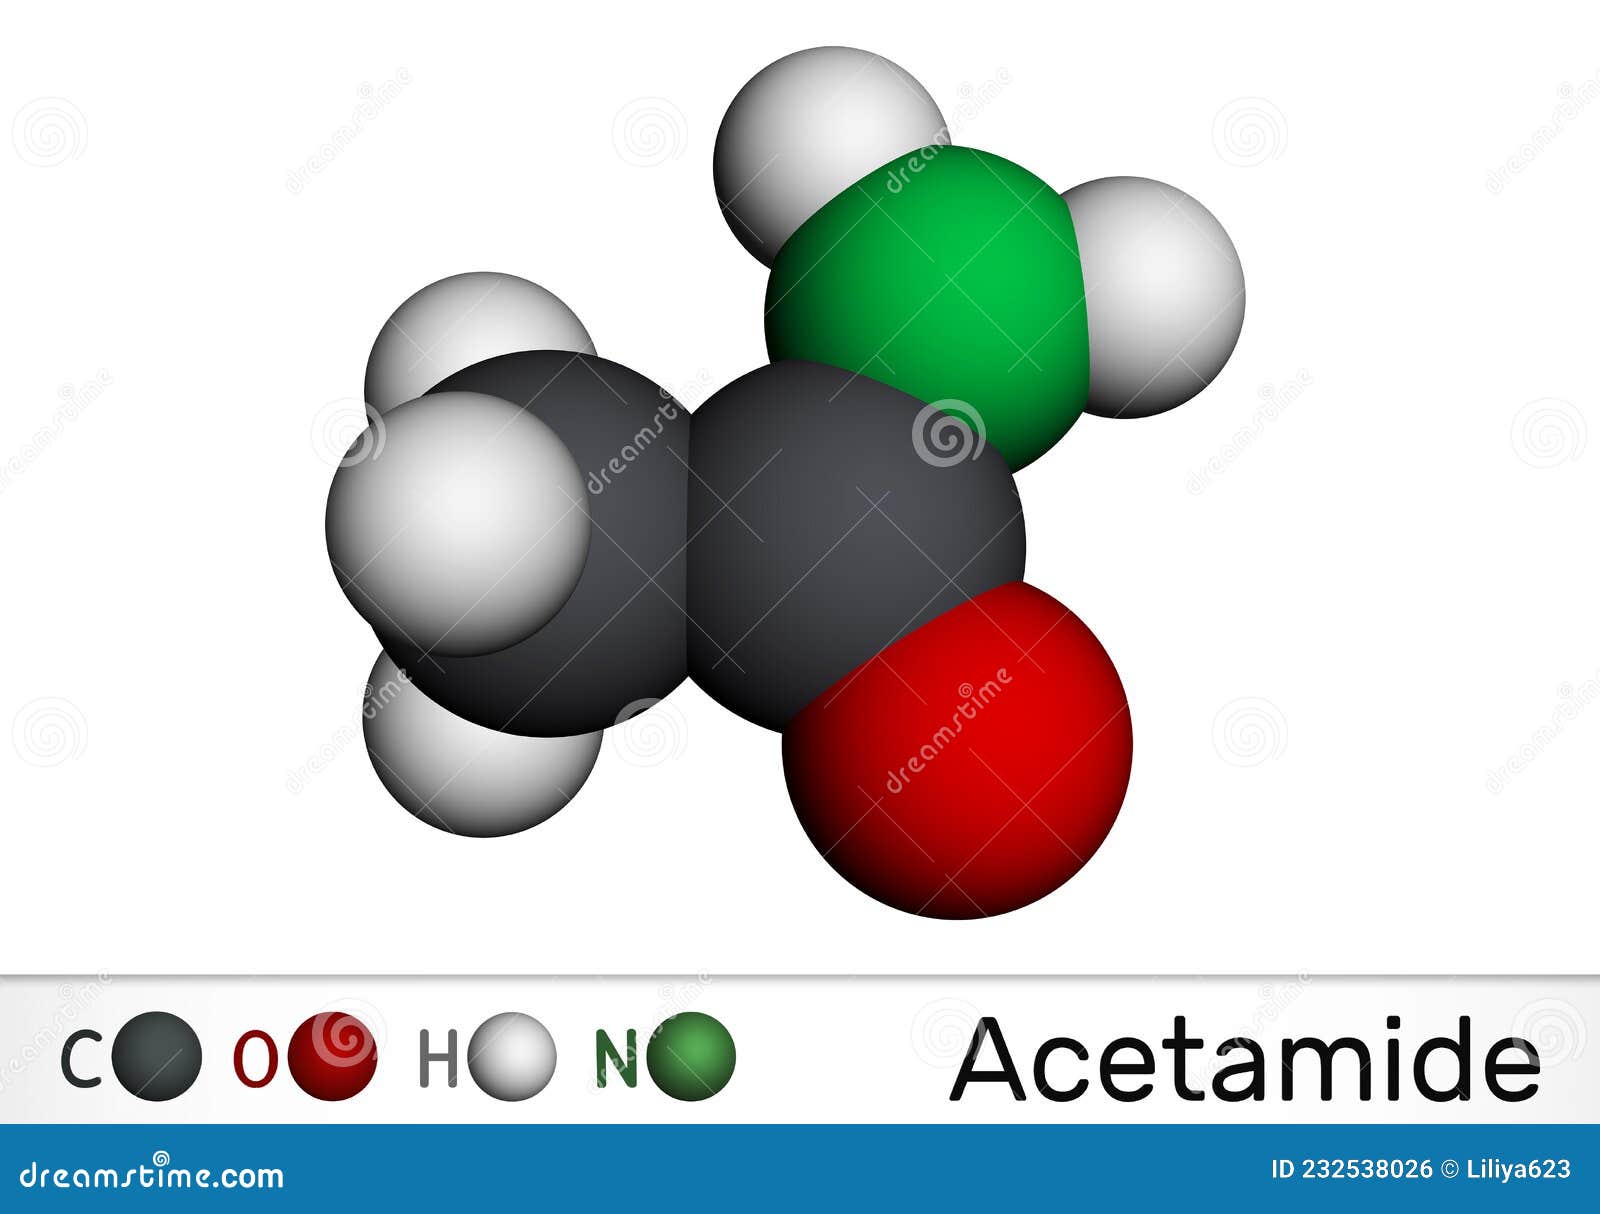 acetamide, ethanamide molecule. it is a monocarboxylic acid amide. molecular model. 3d rendering